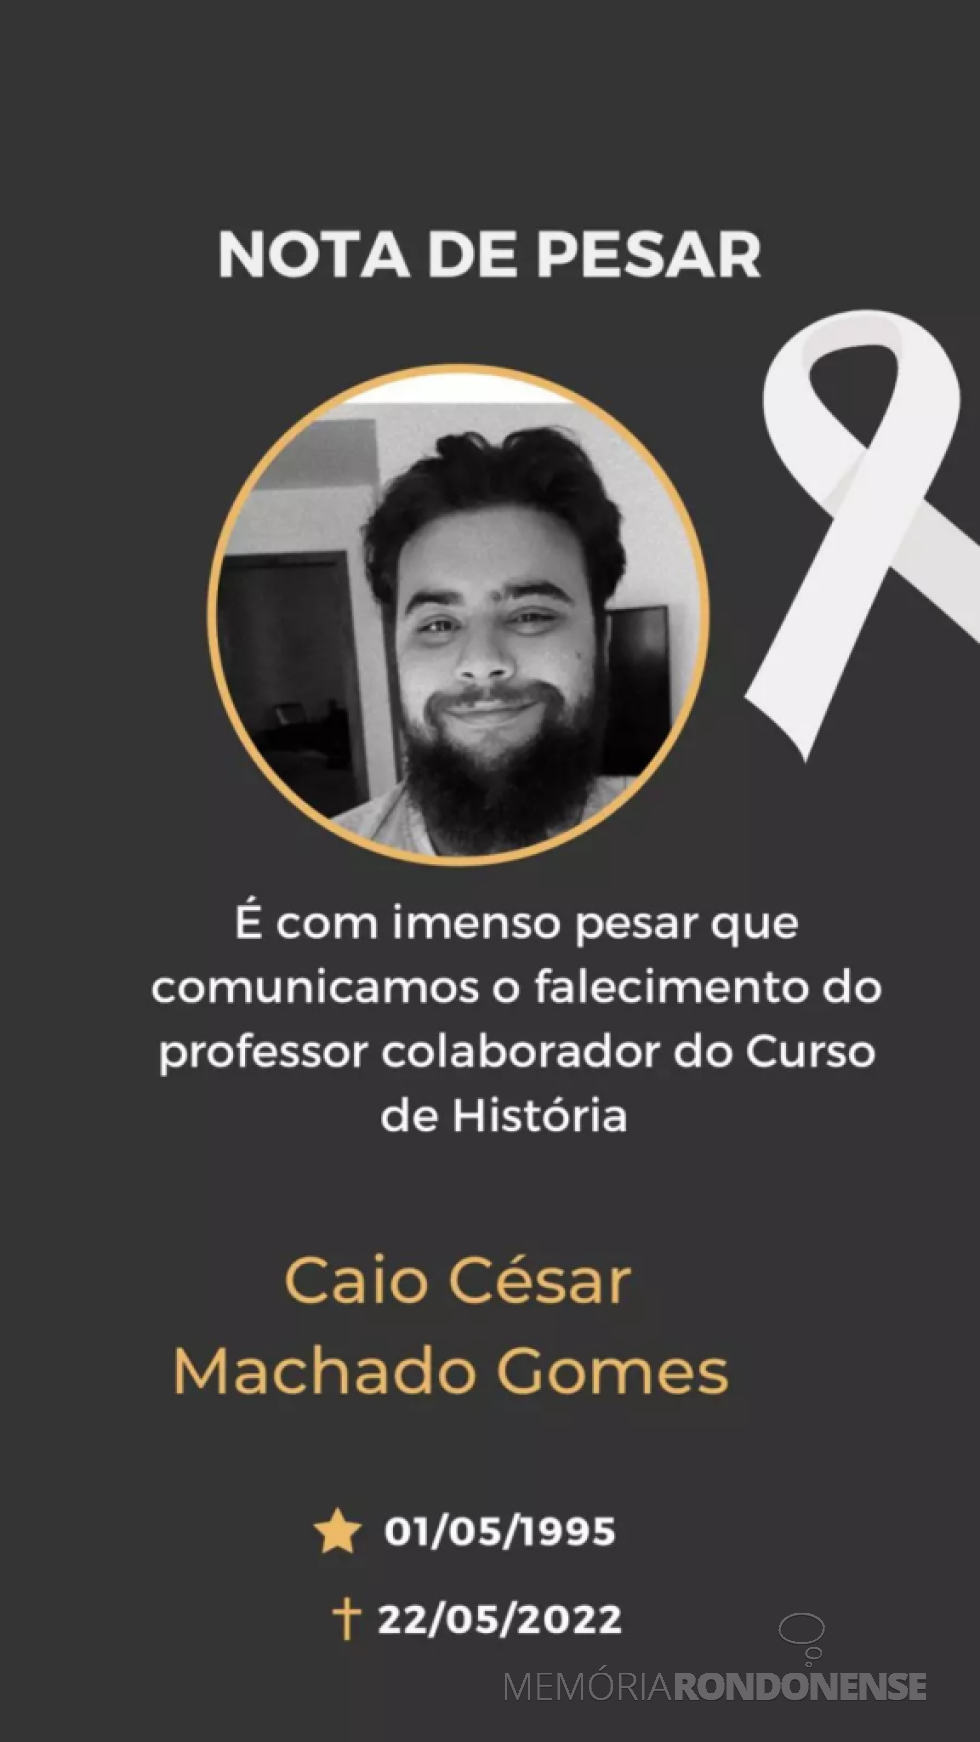 || Comunicado da Unioeste de falecimento do professor Caio César Machado Gomes, em maio de 2022.
Imagem: Acervo Projeto Memória Rondonense - FOTO 16 - 